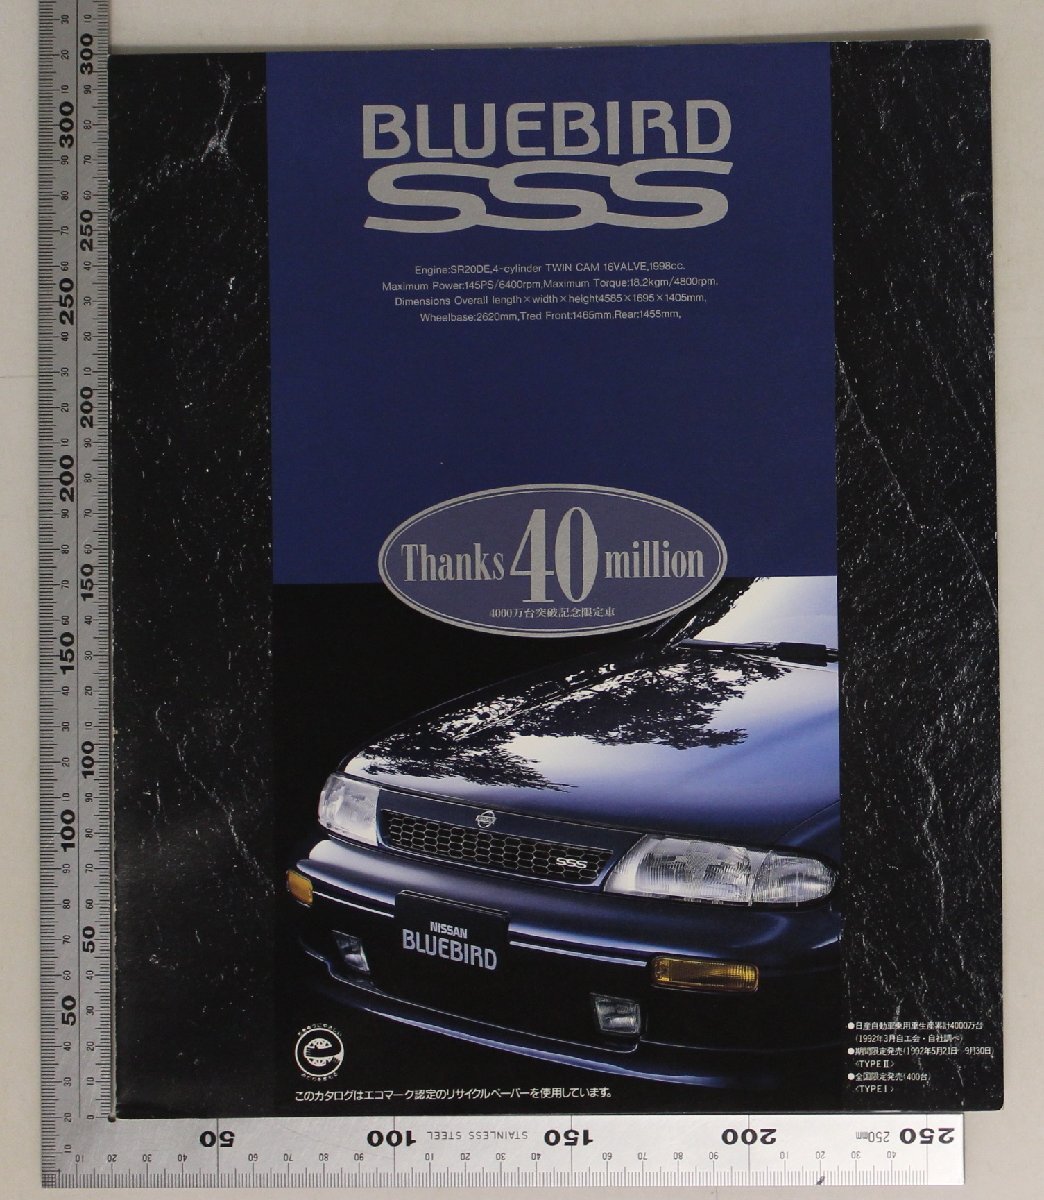 自動車カタログ『BLUEBIRD SSS 4000万台突破記念車』1992年5月 日産 補足:NISSAN/ニッサンブルーバード/2000 SSS-G S.リミテッド/E-HU13_画像1